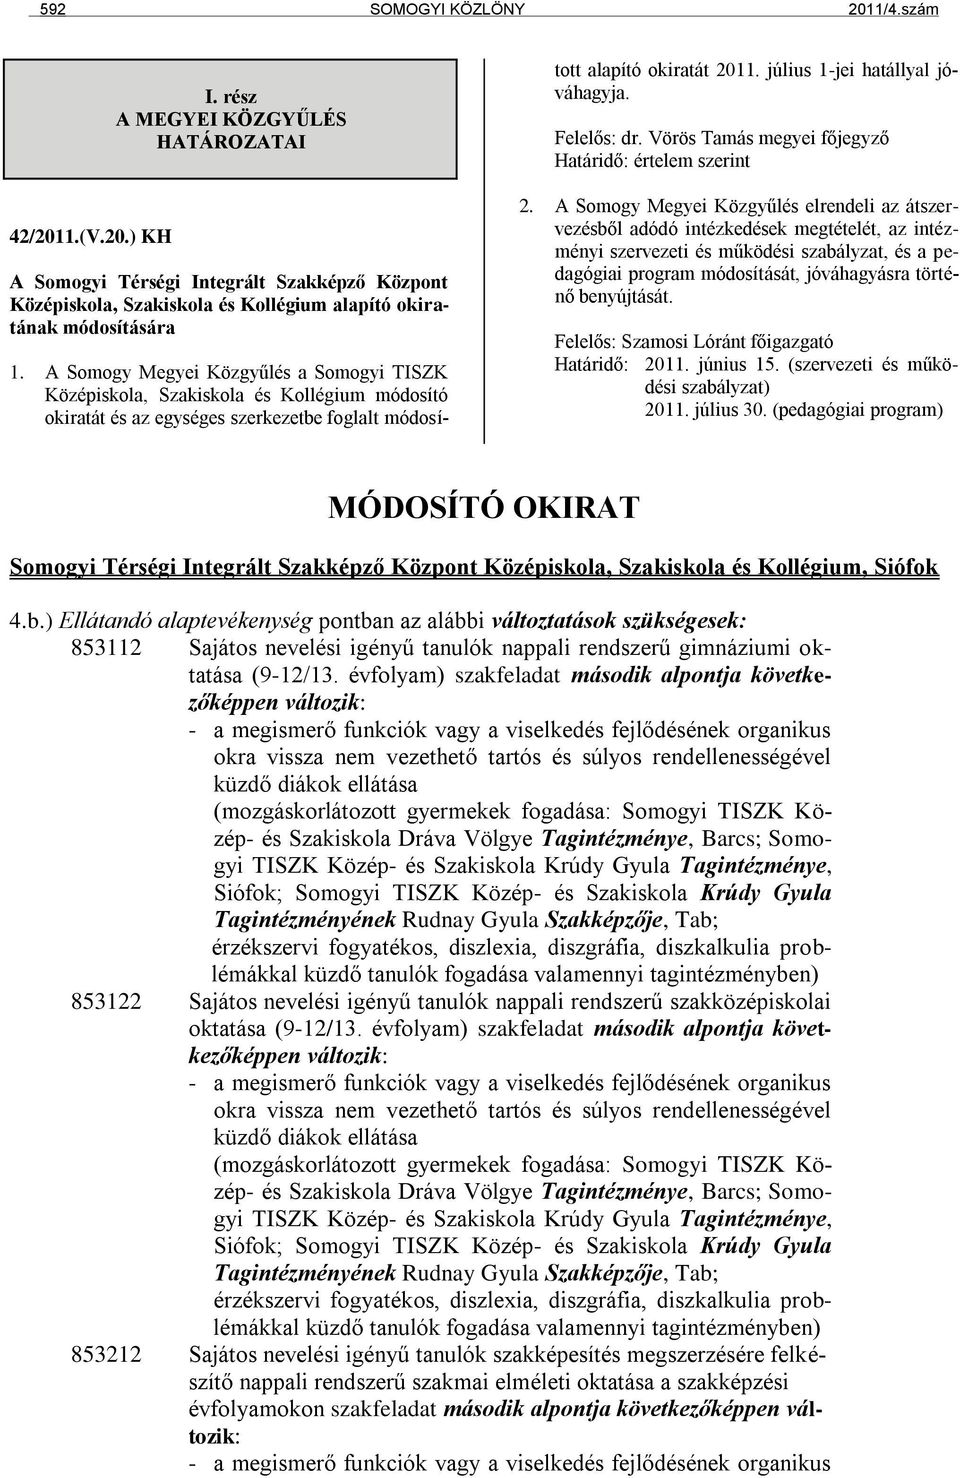 A Somogy Megyei Közgyűlés a Somogyi TISZK Középiskola, Szakiskola és Kollégium módosító okiratát és az egységes szerkezetbe foglalt módosított alapító okiratát 2011. július 1-jei hatállyal jóváhagyja.